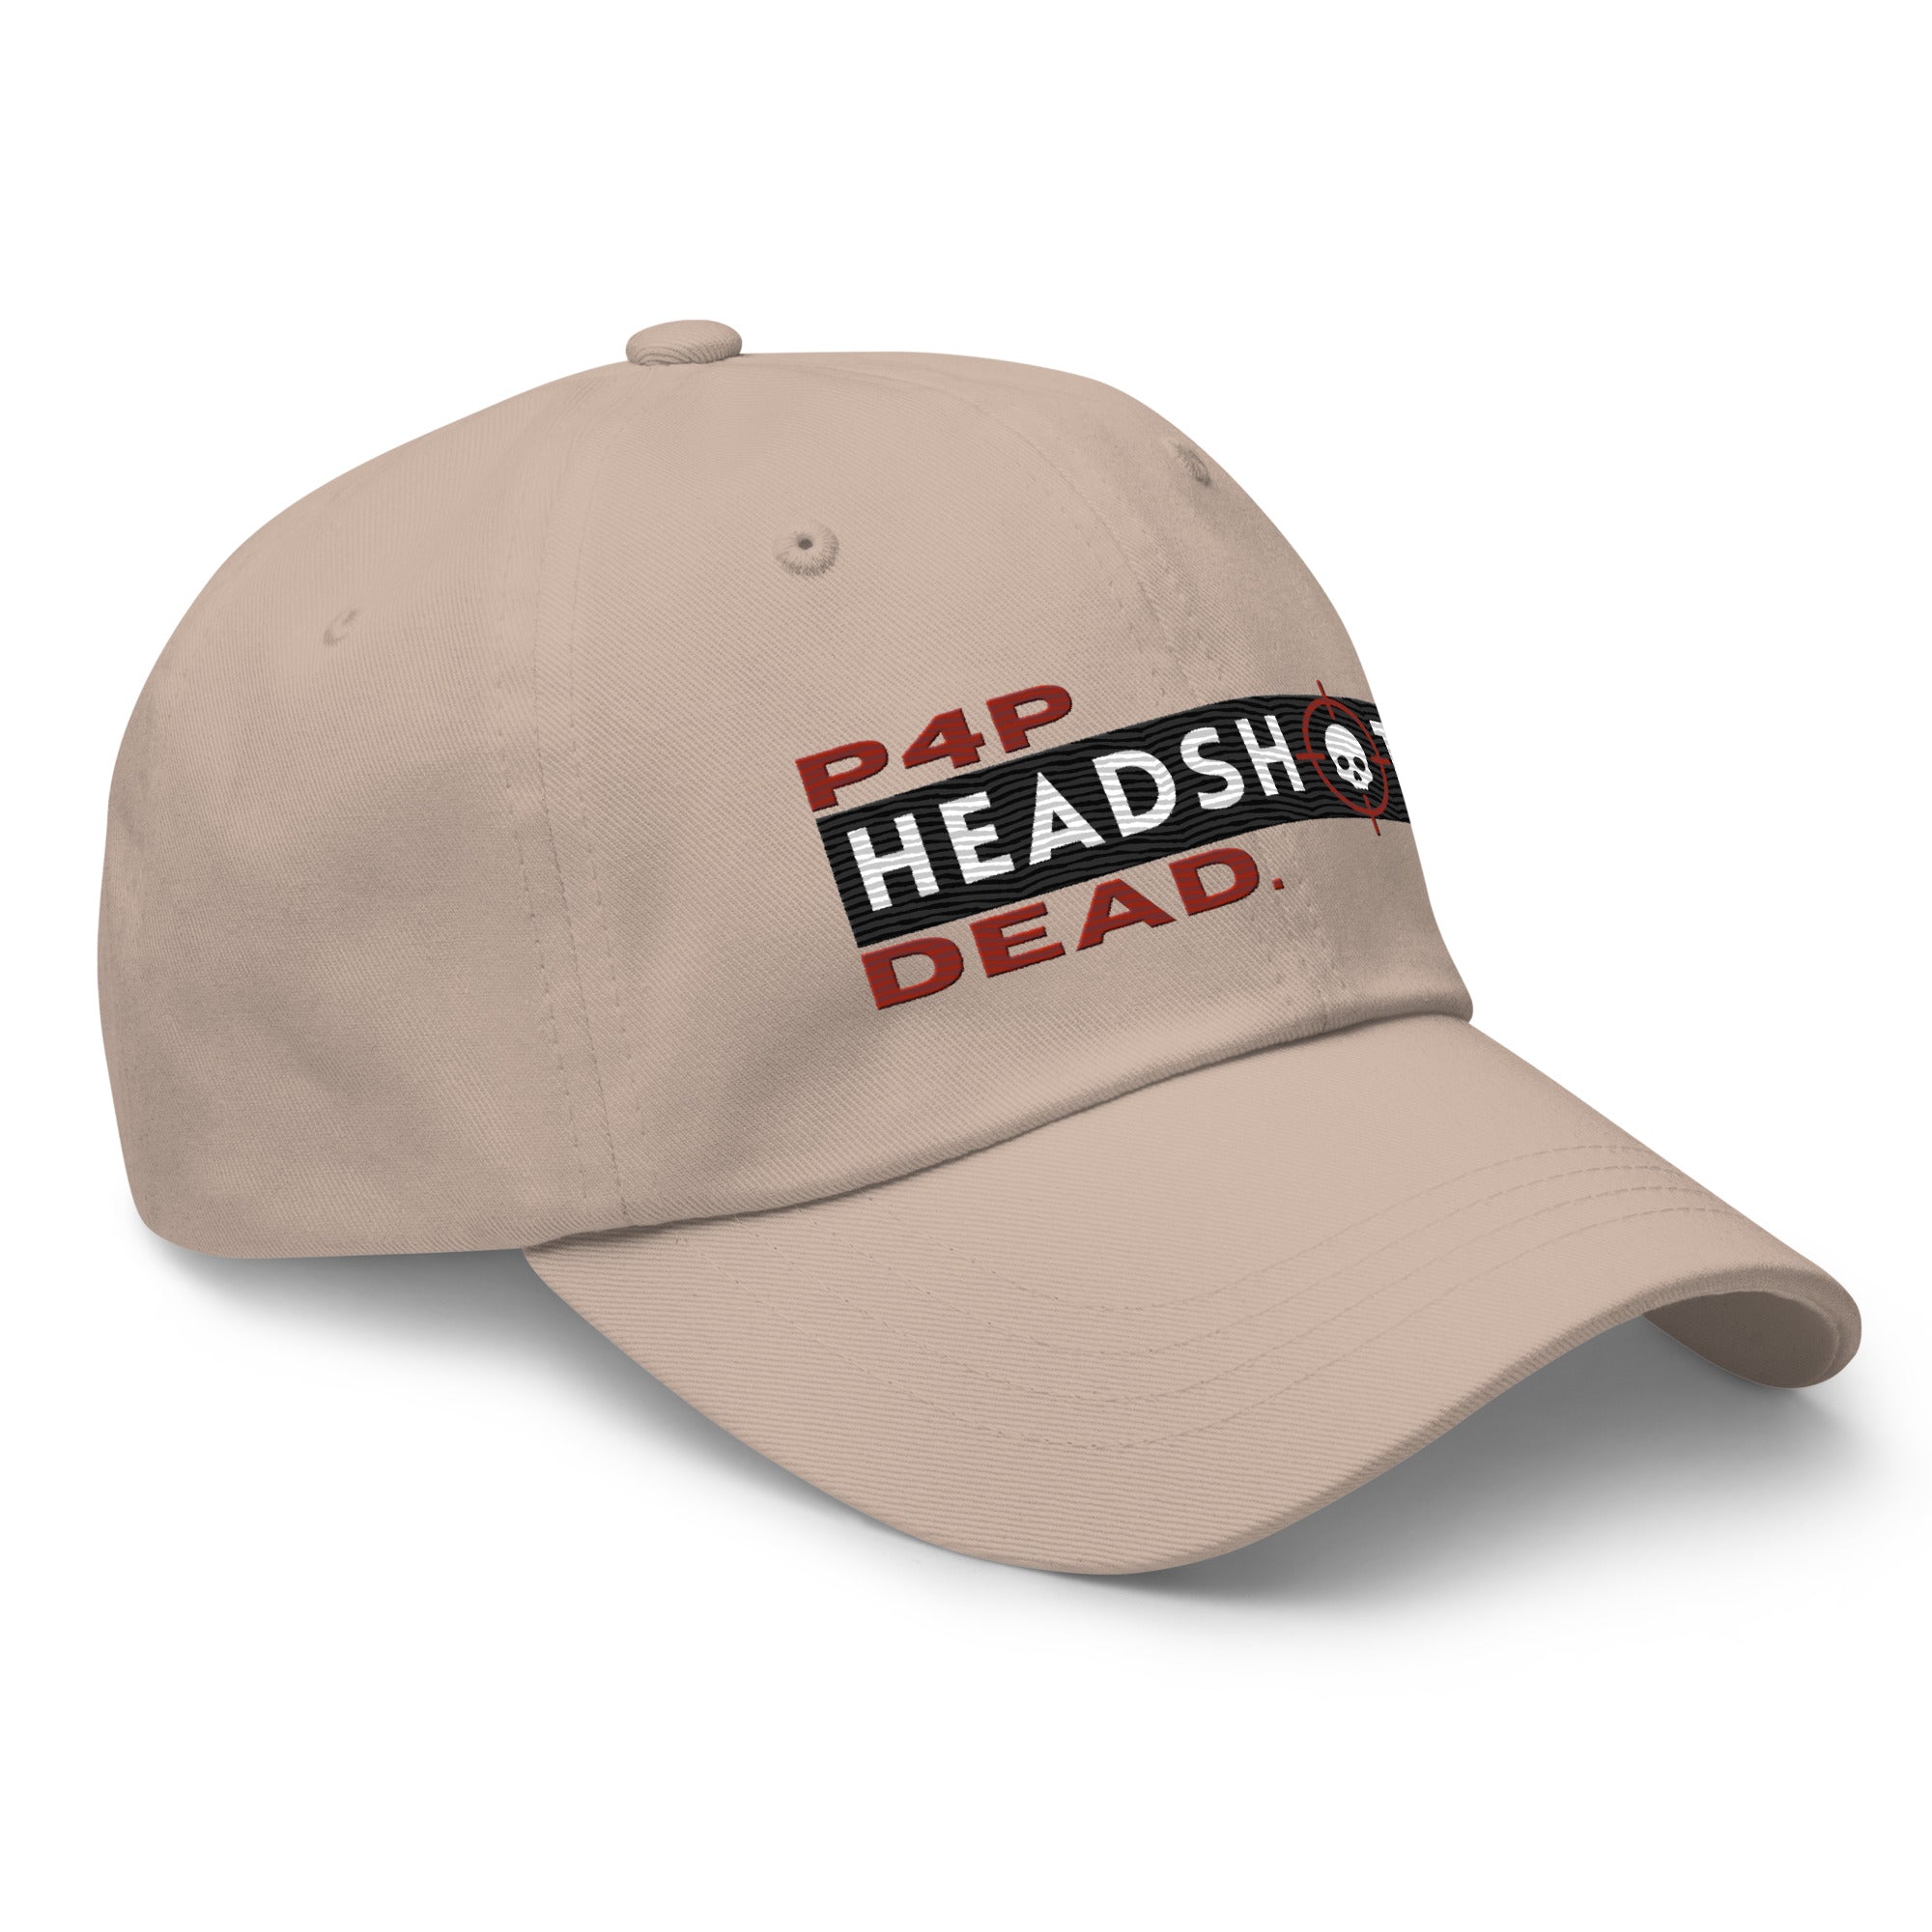 Pound for Pound, Headshot, Dead! Premium MMA Hat (Red Alert)